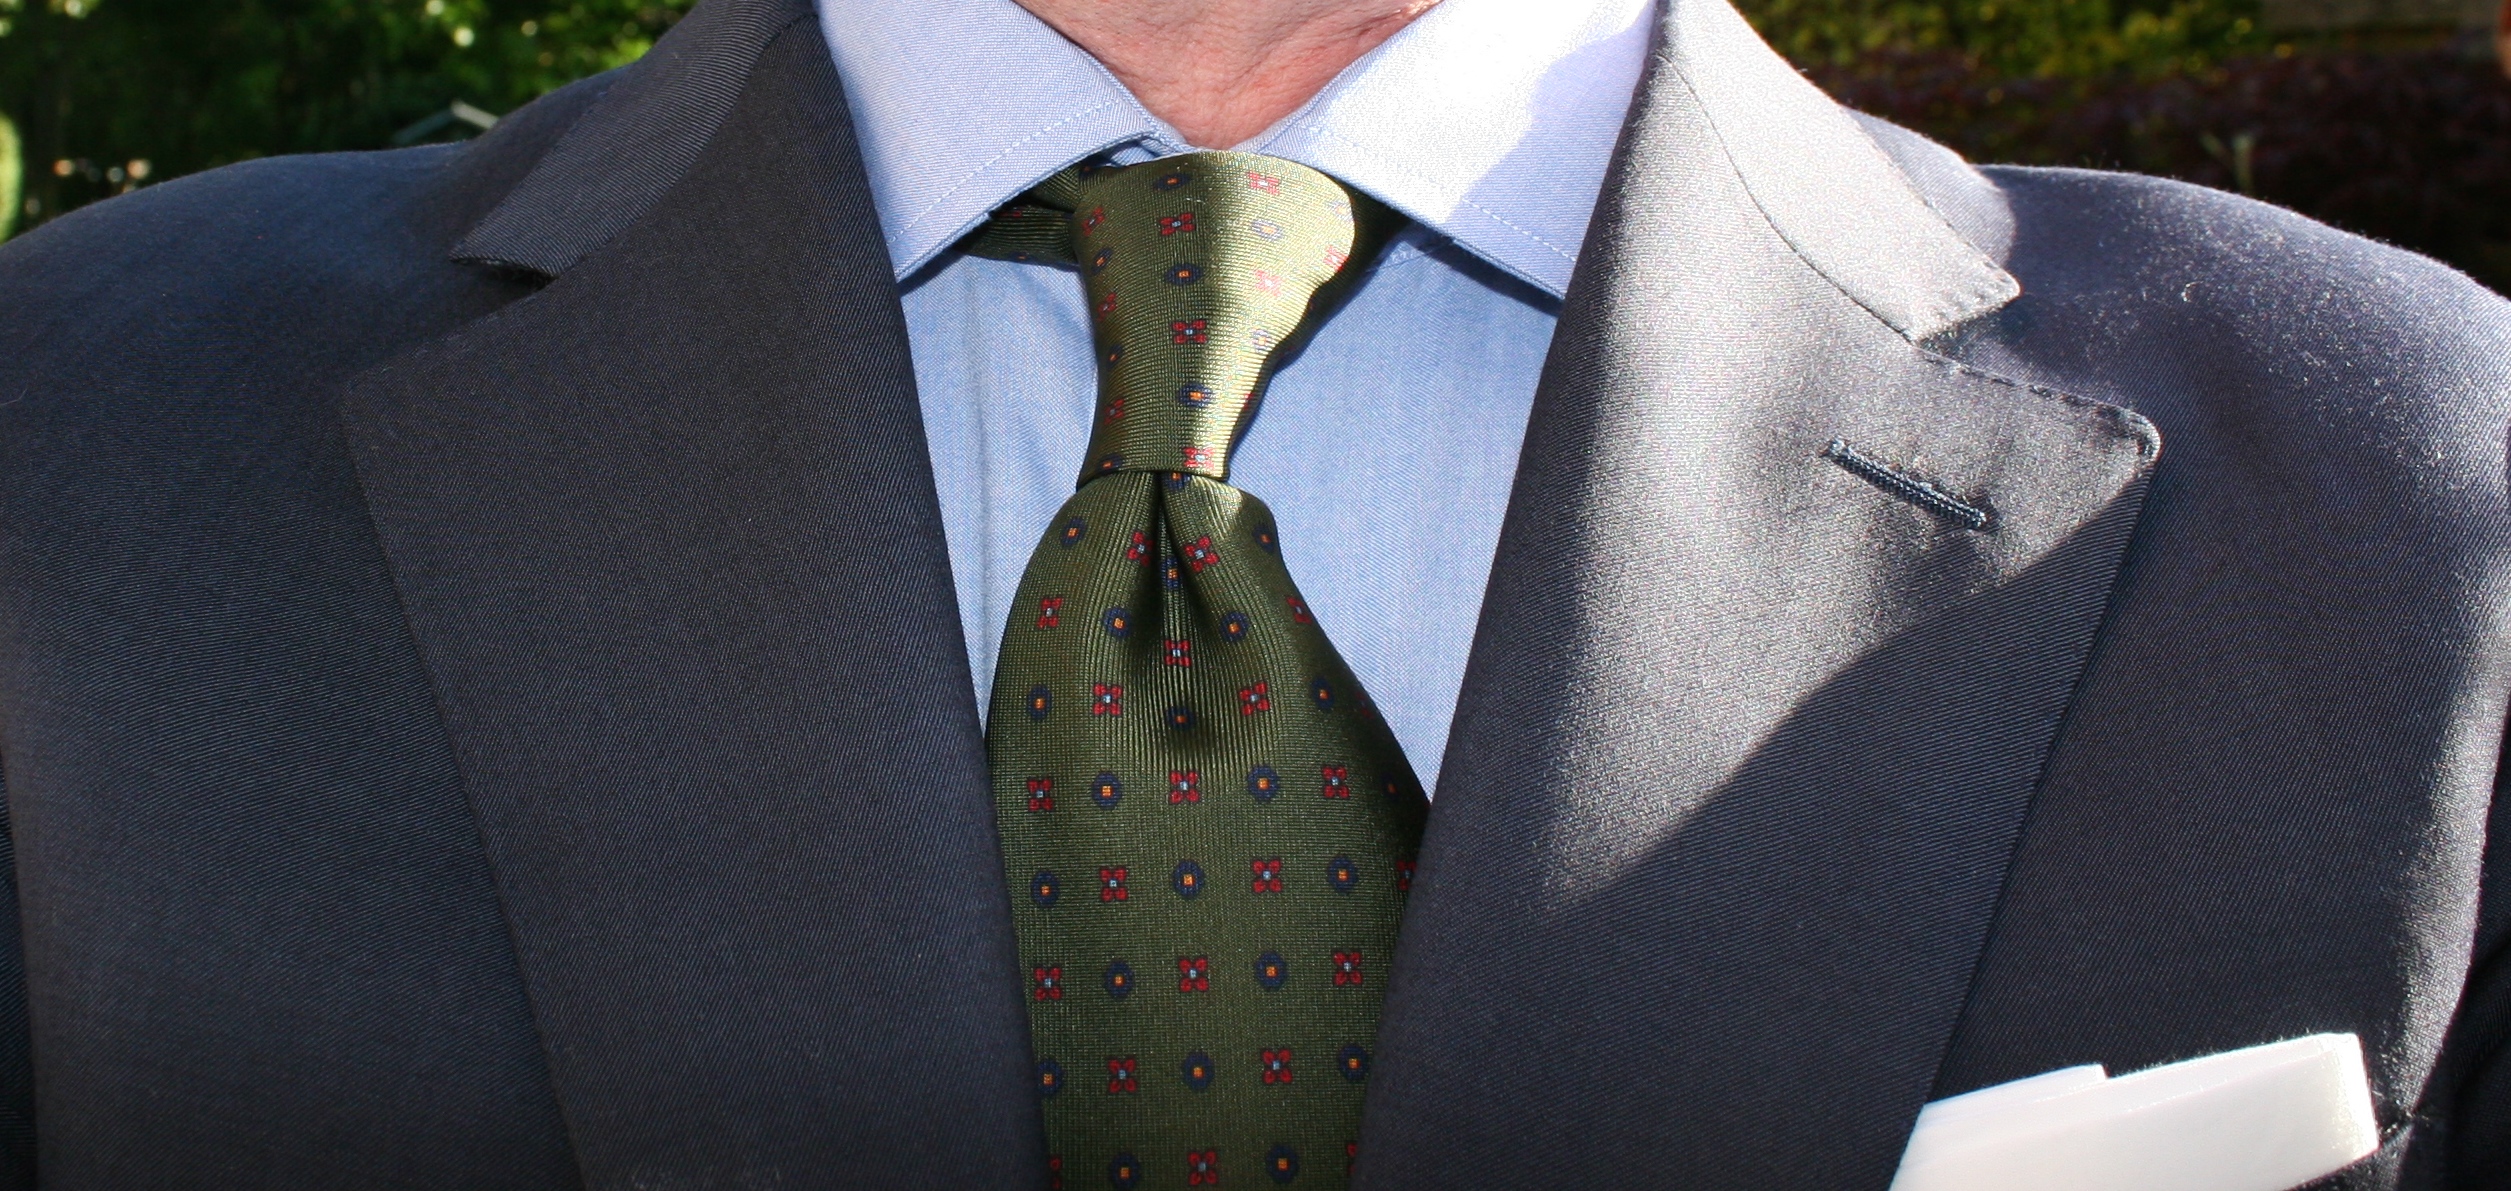 The Green Tie Appreciation Thread | Page 2 | Styleforum